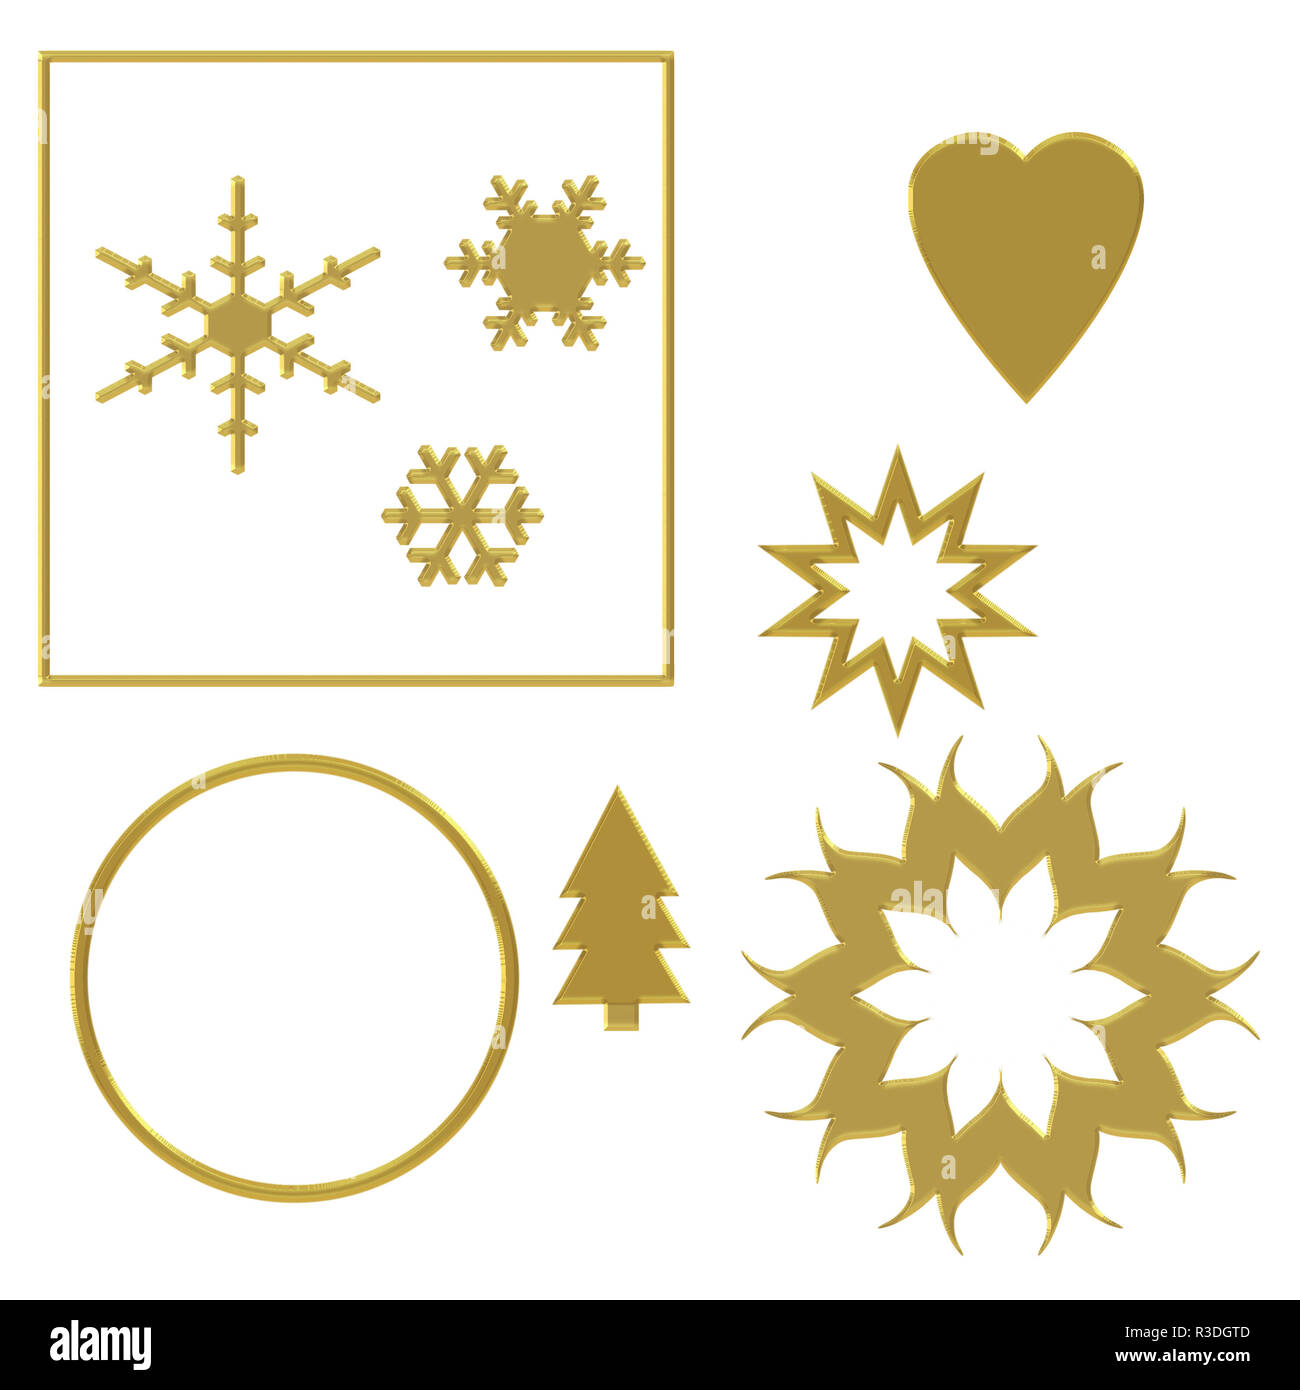 Verschiedene festliche Elemente mit gold Wirkung, auf weißem Hintergrund mit gemeißelten Wirkung fancy Kante isoliert. Herz, Kreis, Schneeflocke, Stern, Weihnachtsbaum etc. Stockfoto